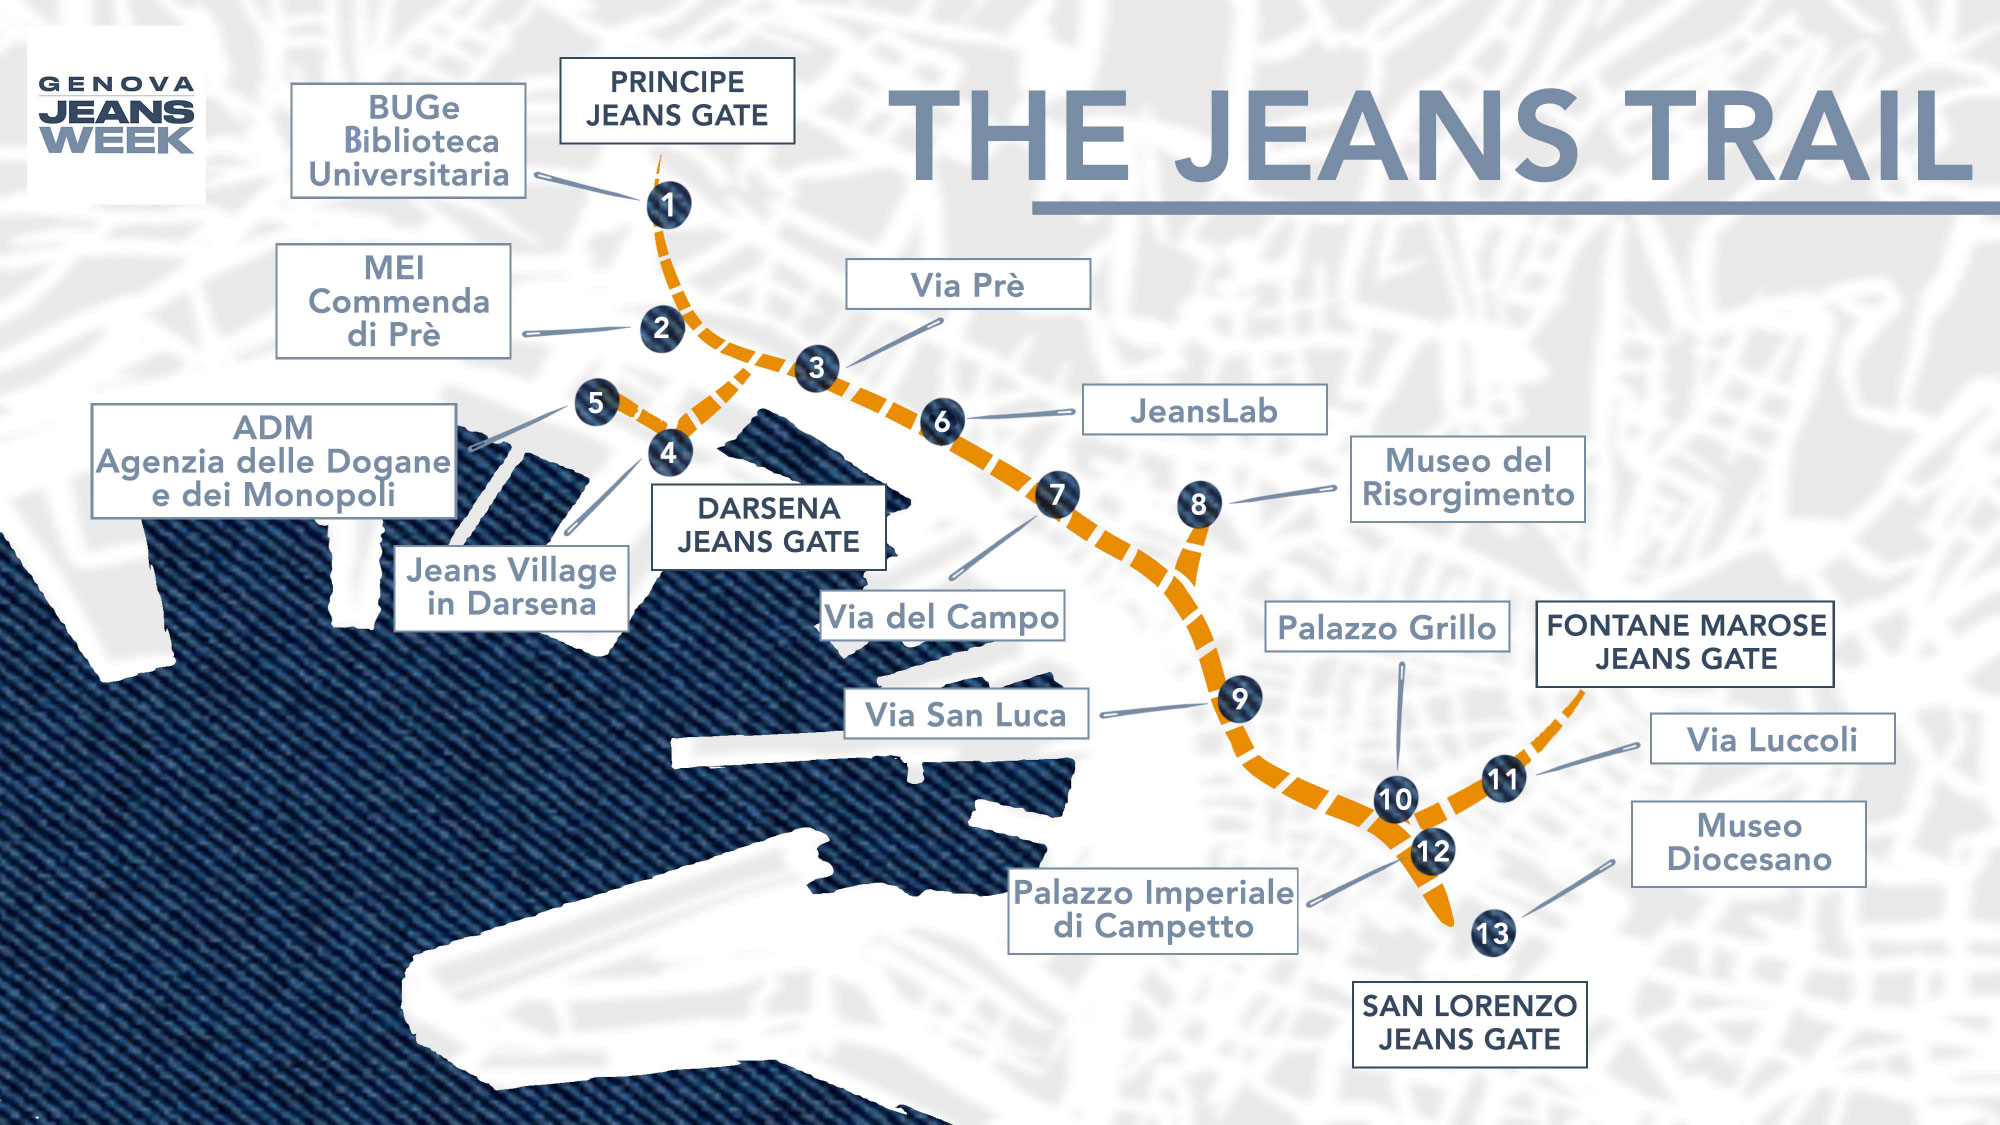 Mappa la via del Jeans